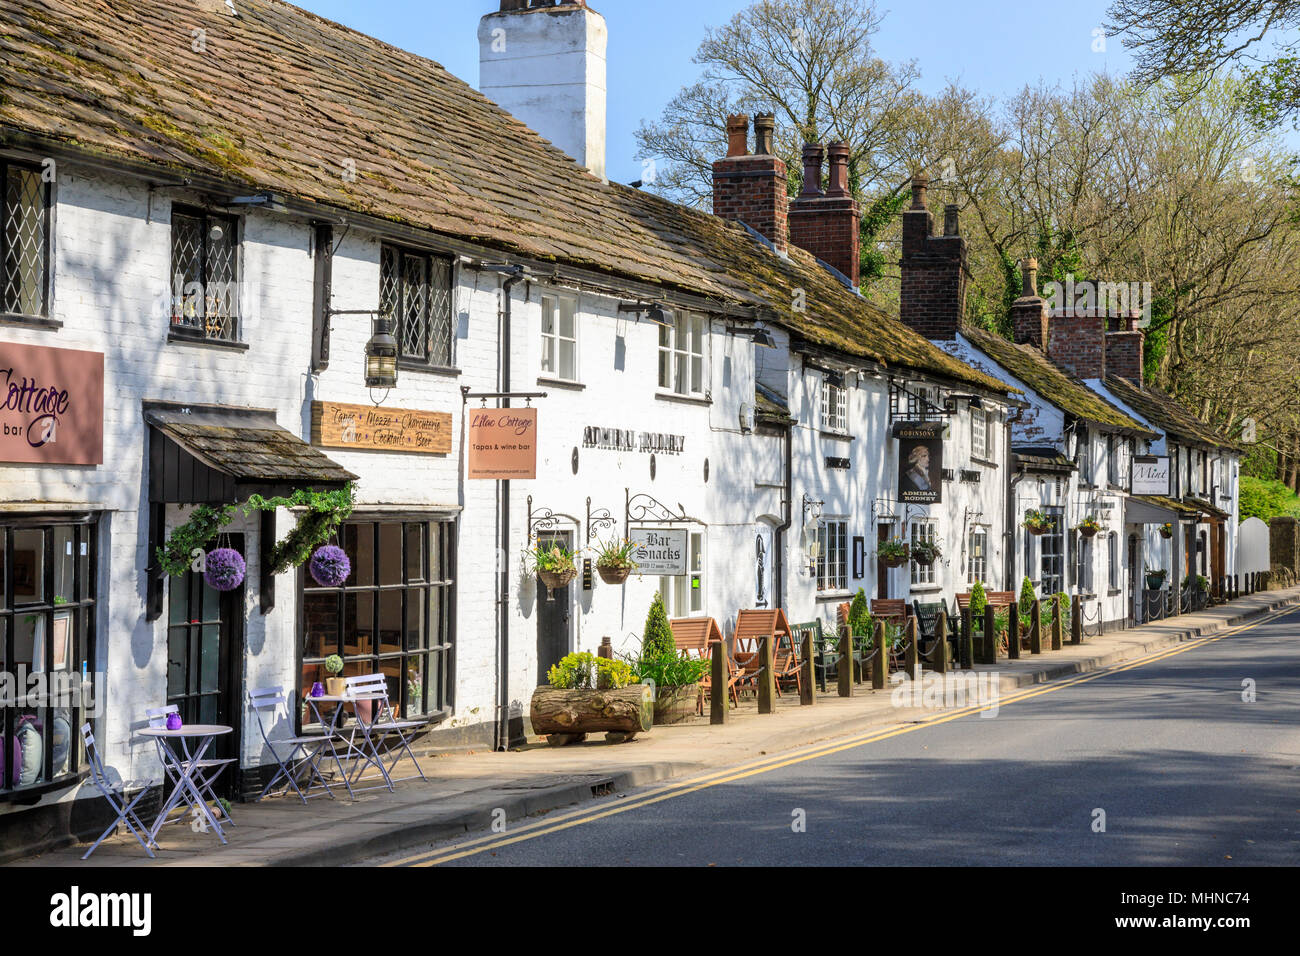 Prestbury ist ein historisches Dorf in Cheshire Osten. Dies ist die Hauptstraße mit Geschäften und Restaurants Stockfoto